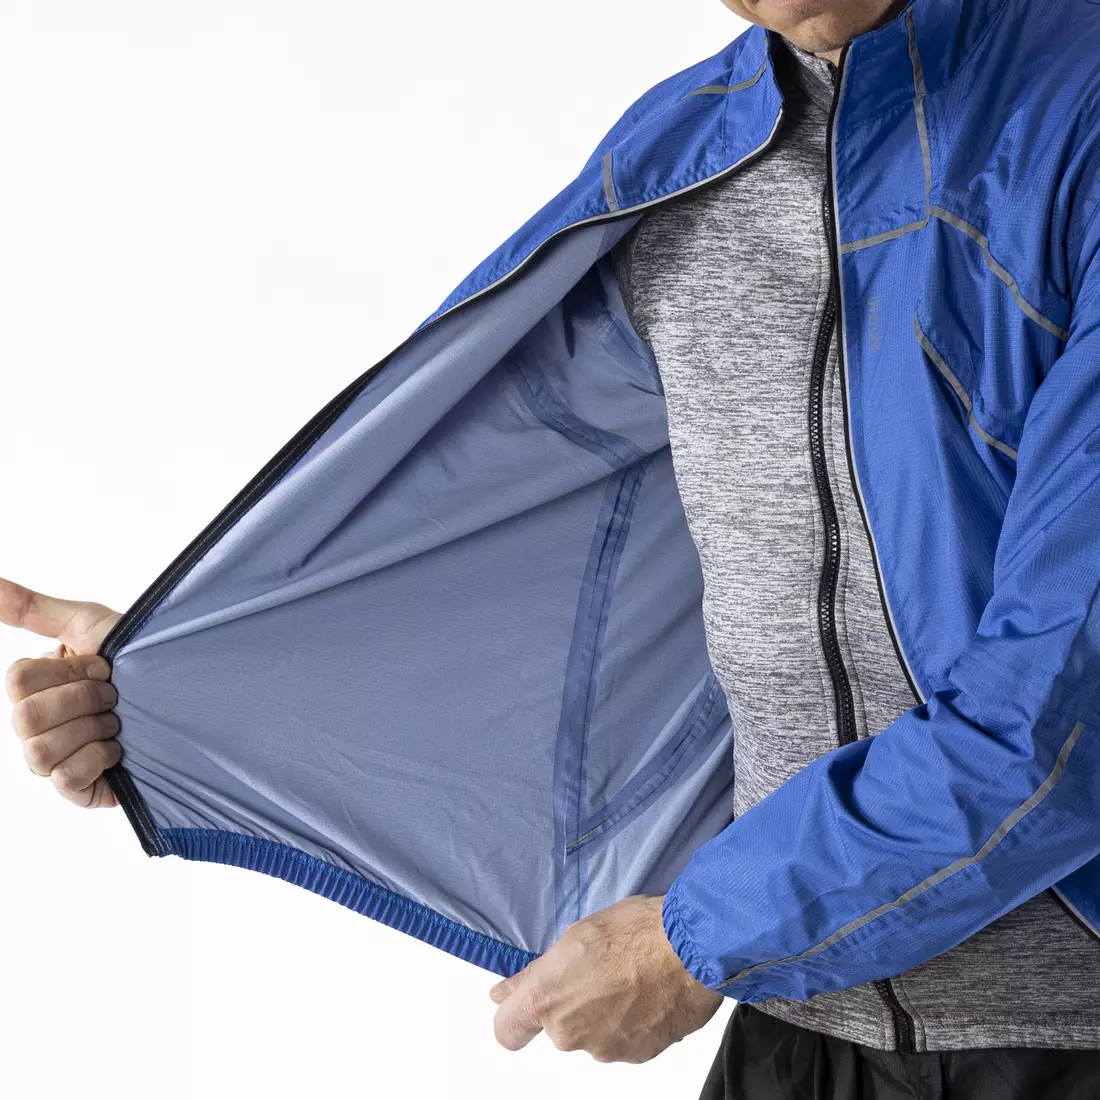 KAYMAQ J1 jachetă de ciclism de ploaie pentru bărbați, albastru